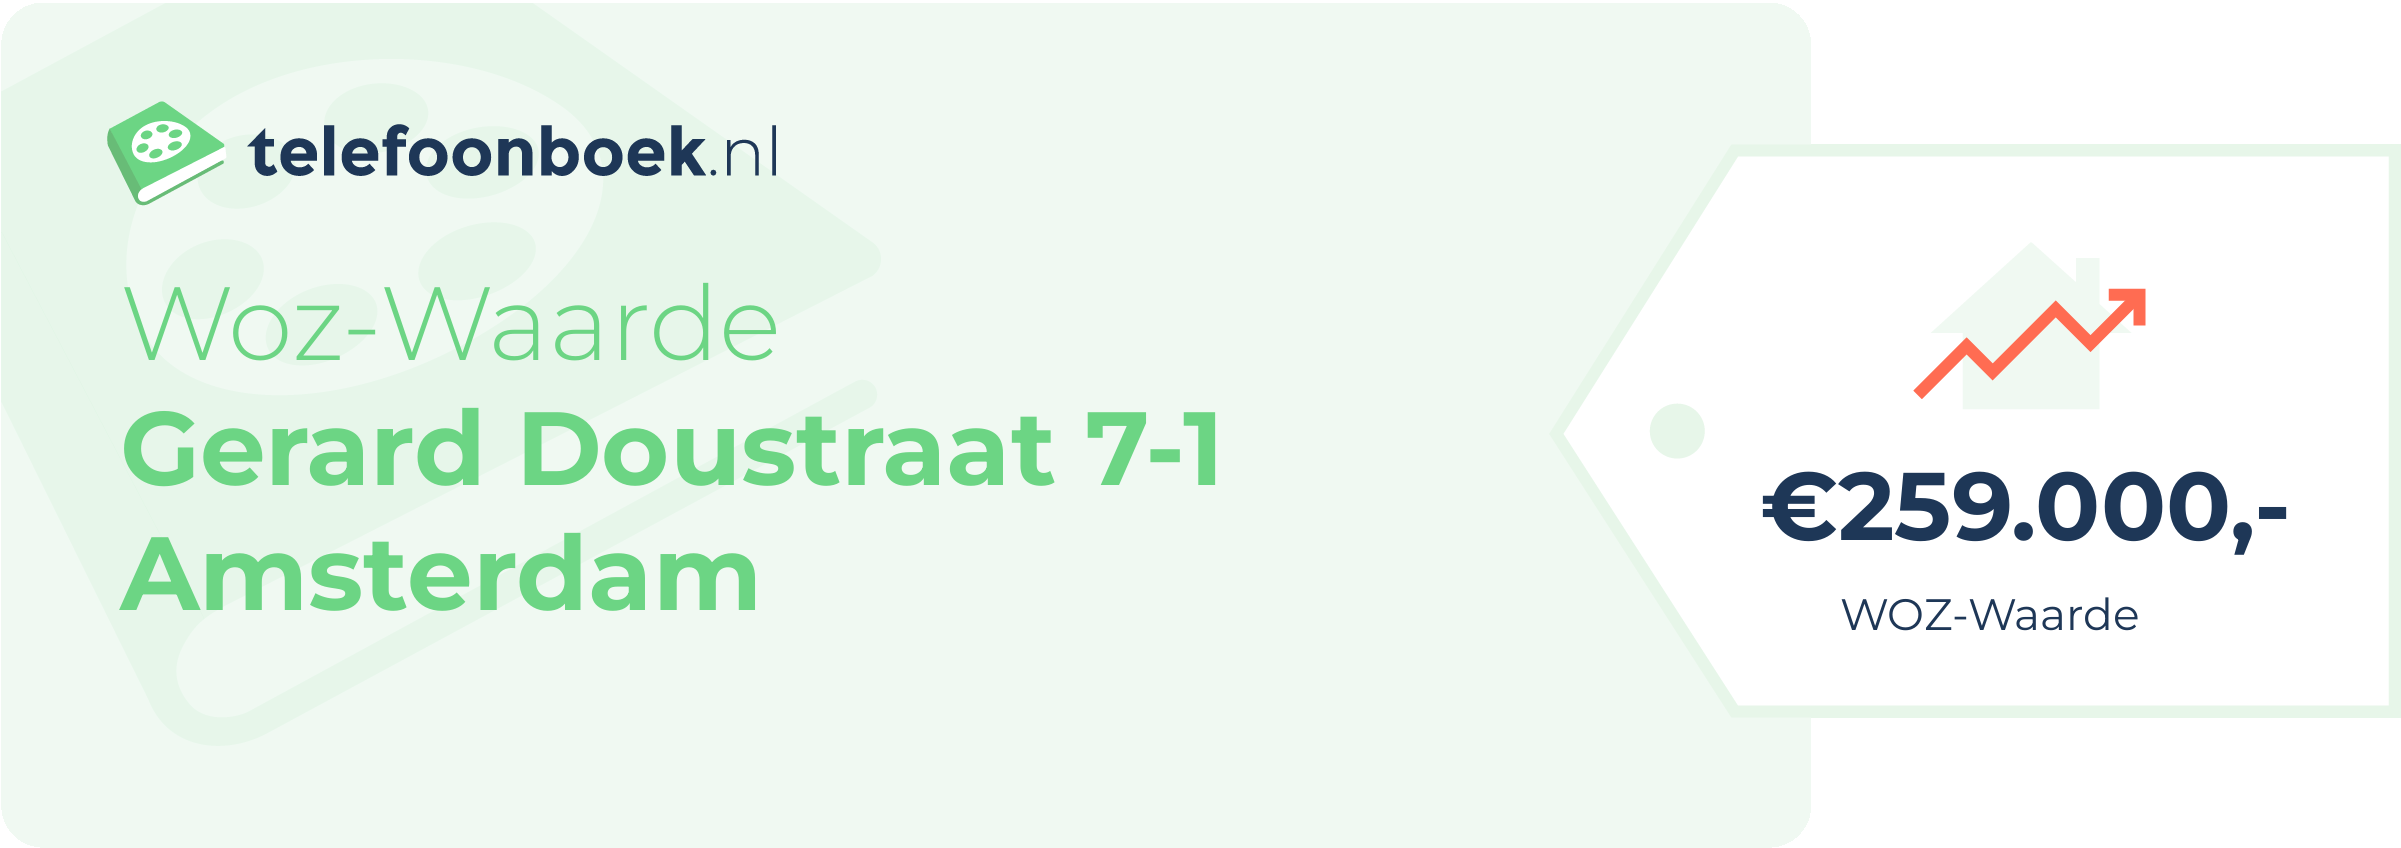 WOZ-waarde Gerard Doustraat 7-1 Amsterdam